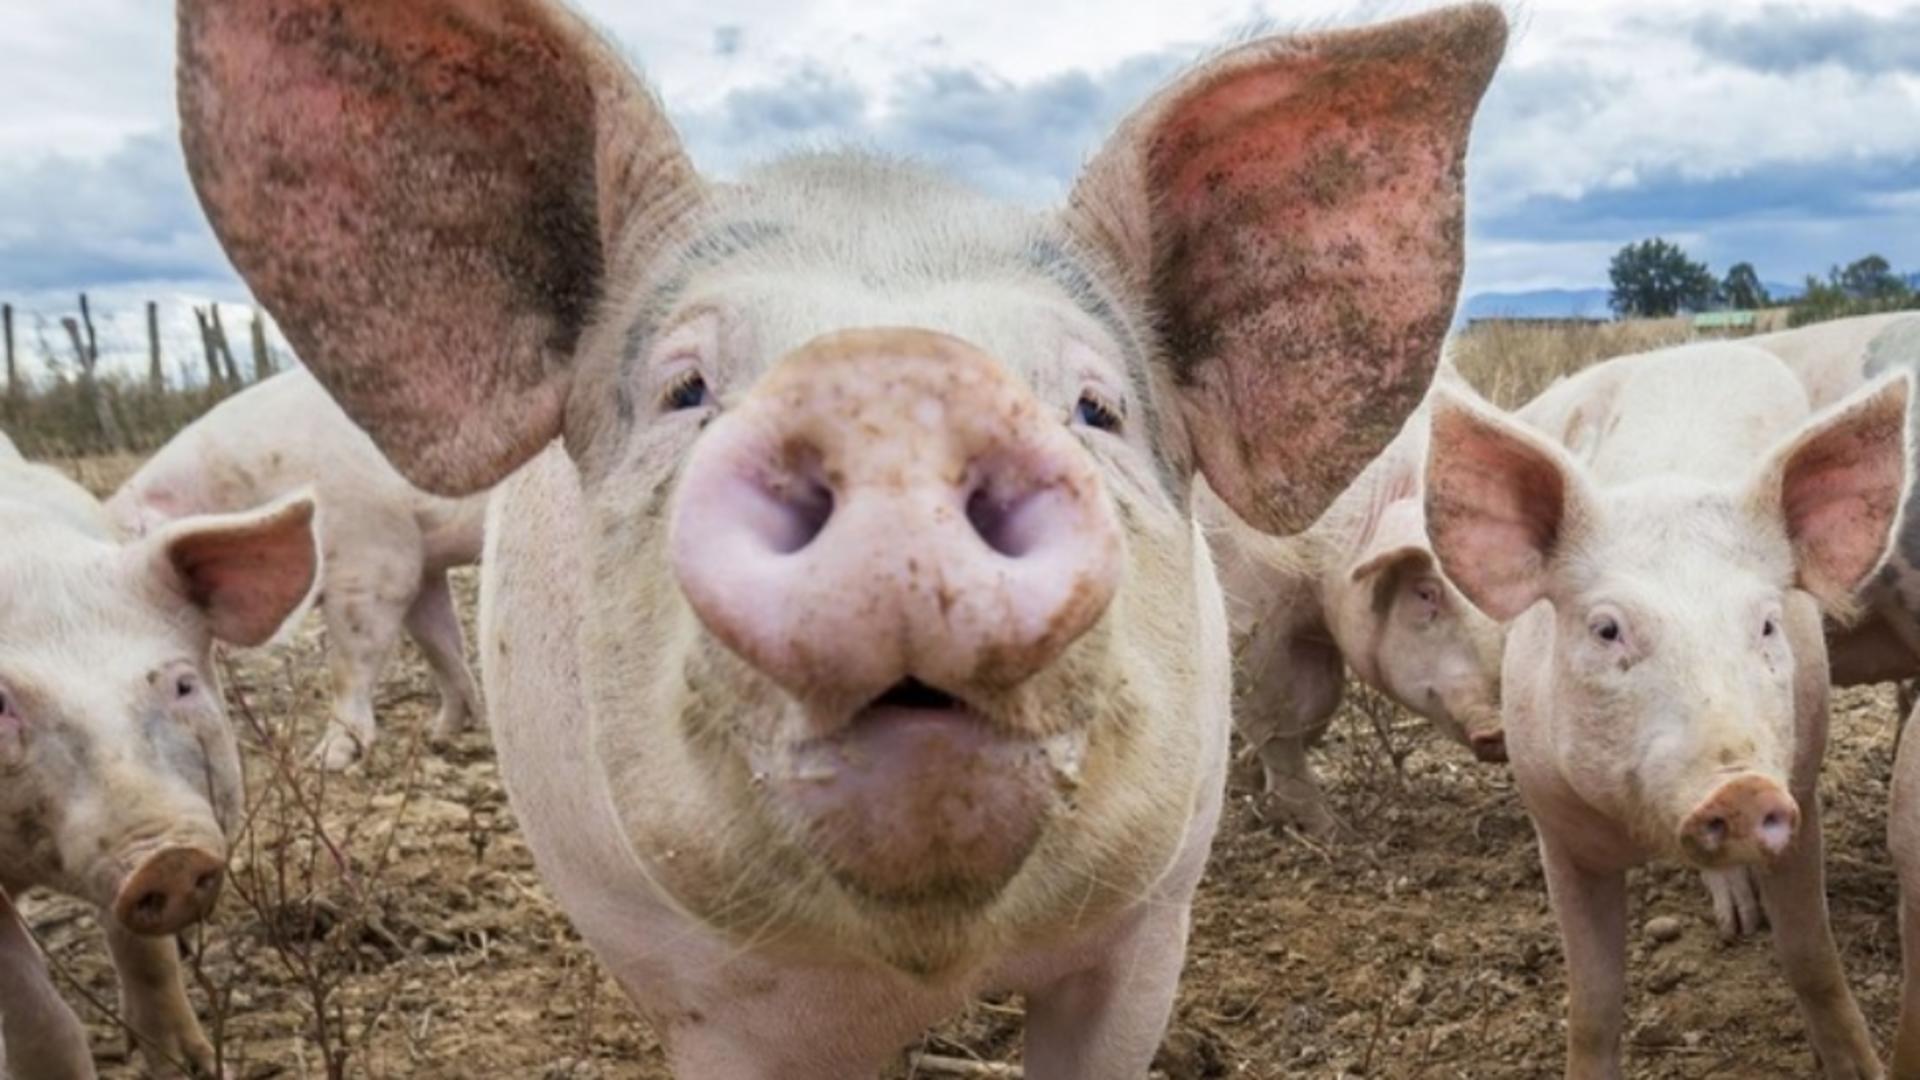 Pesta porcină africană a afectat producția de carne de porc